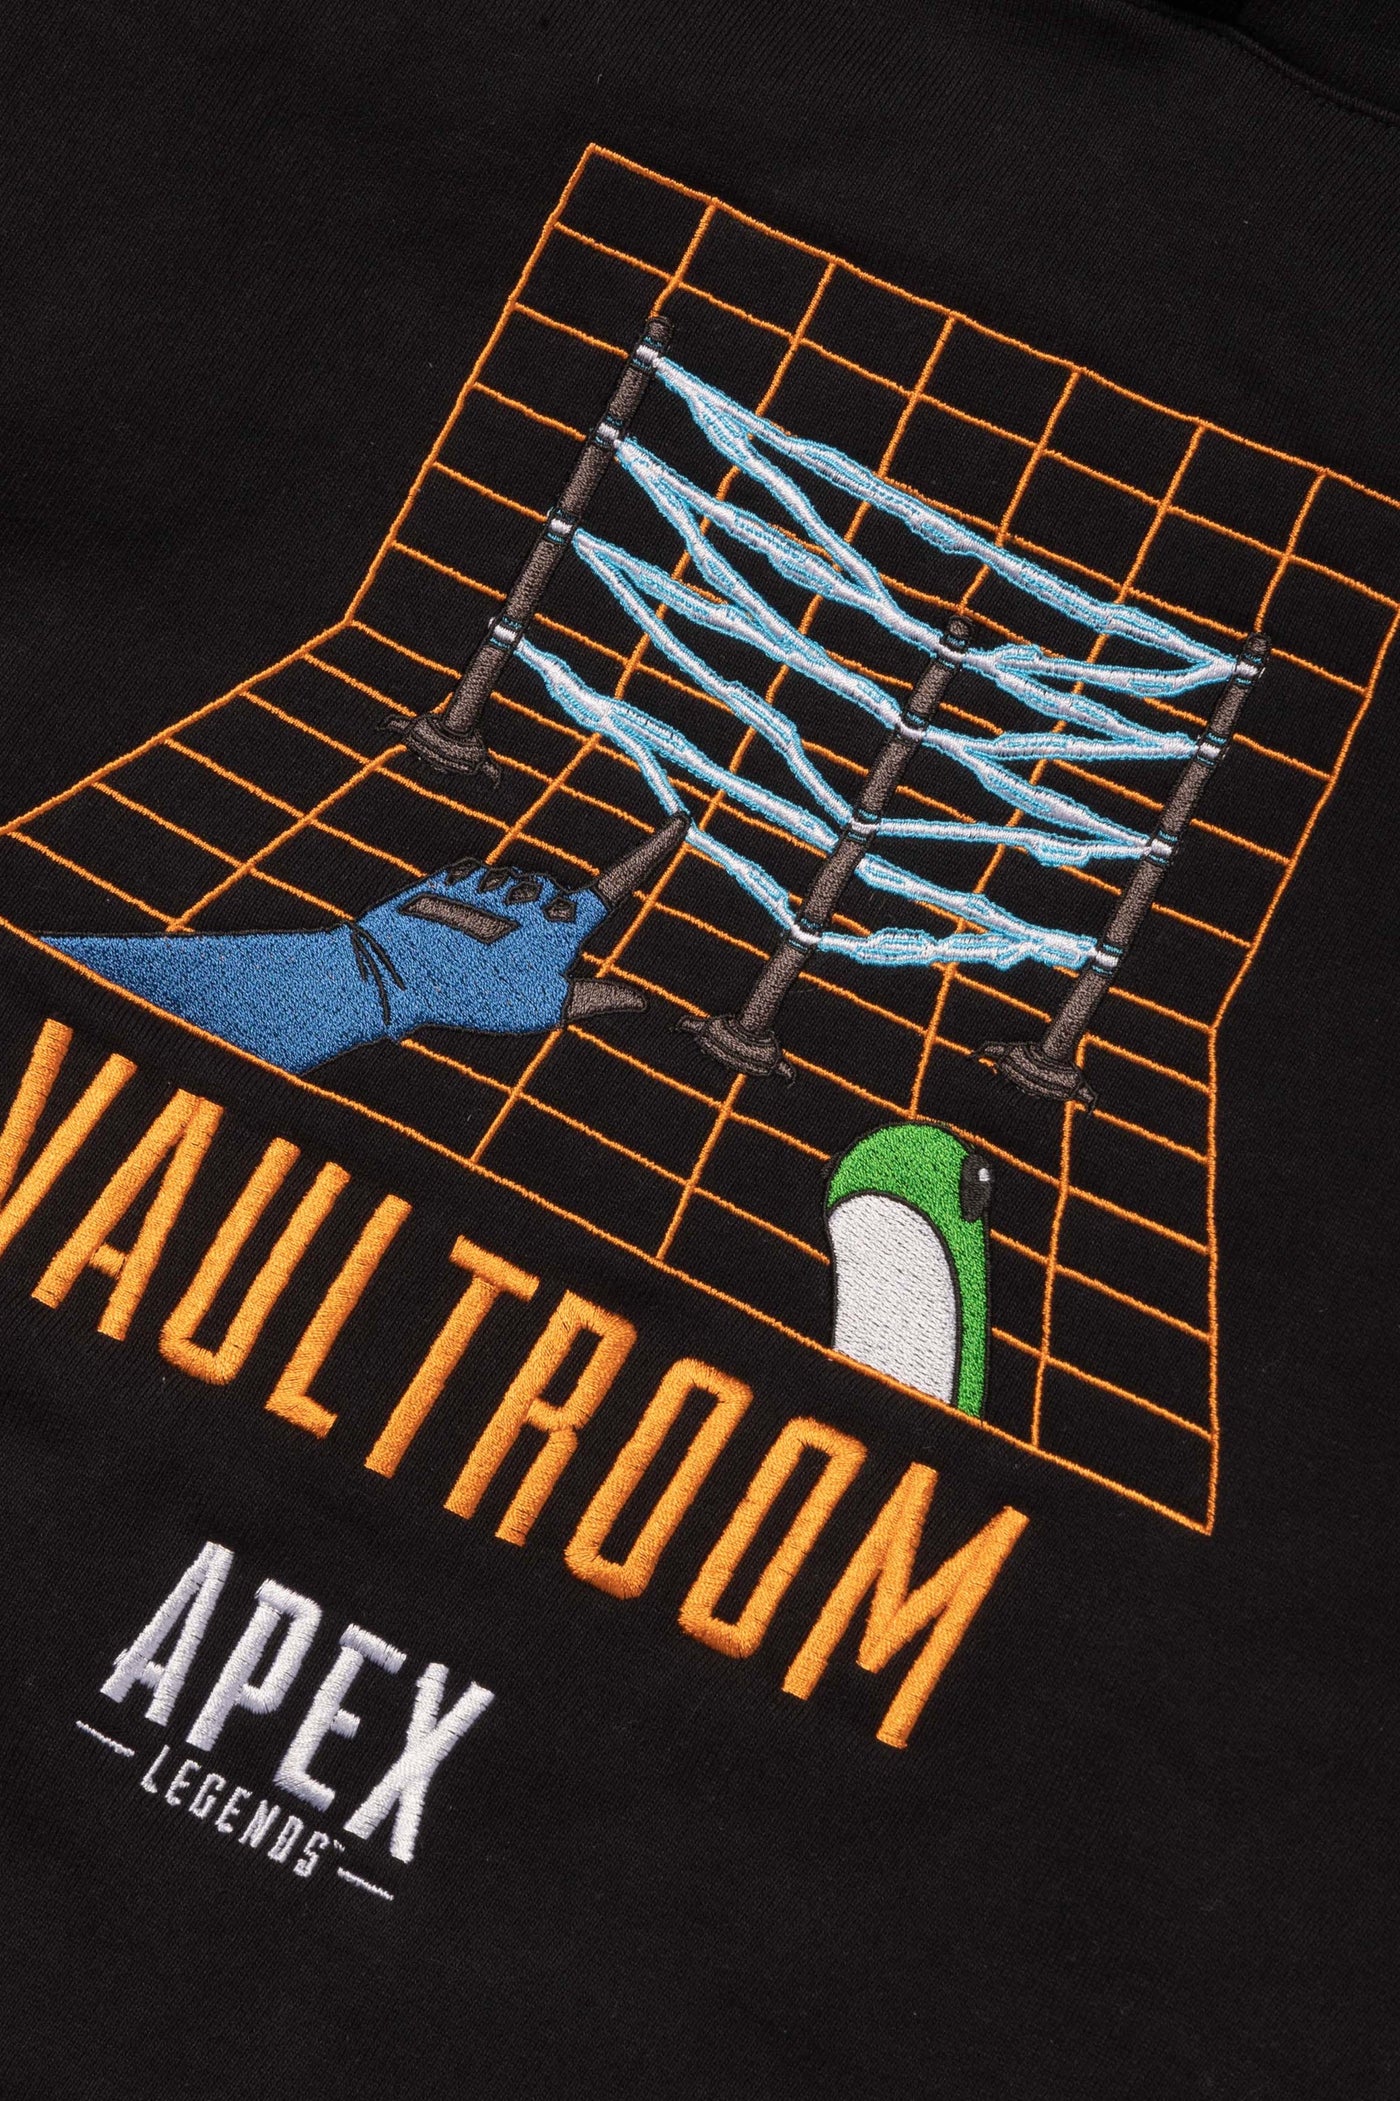 vaultroom × Apex wattson hoodie